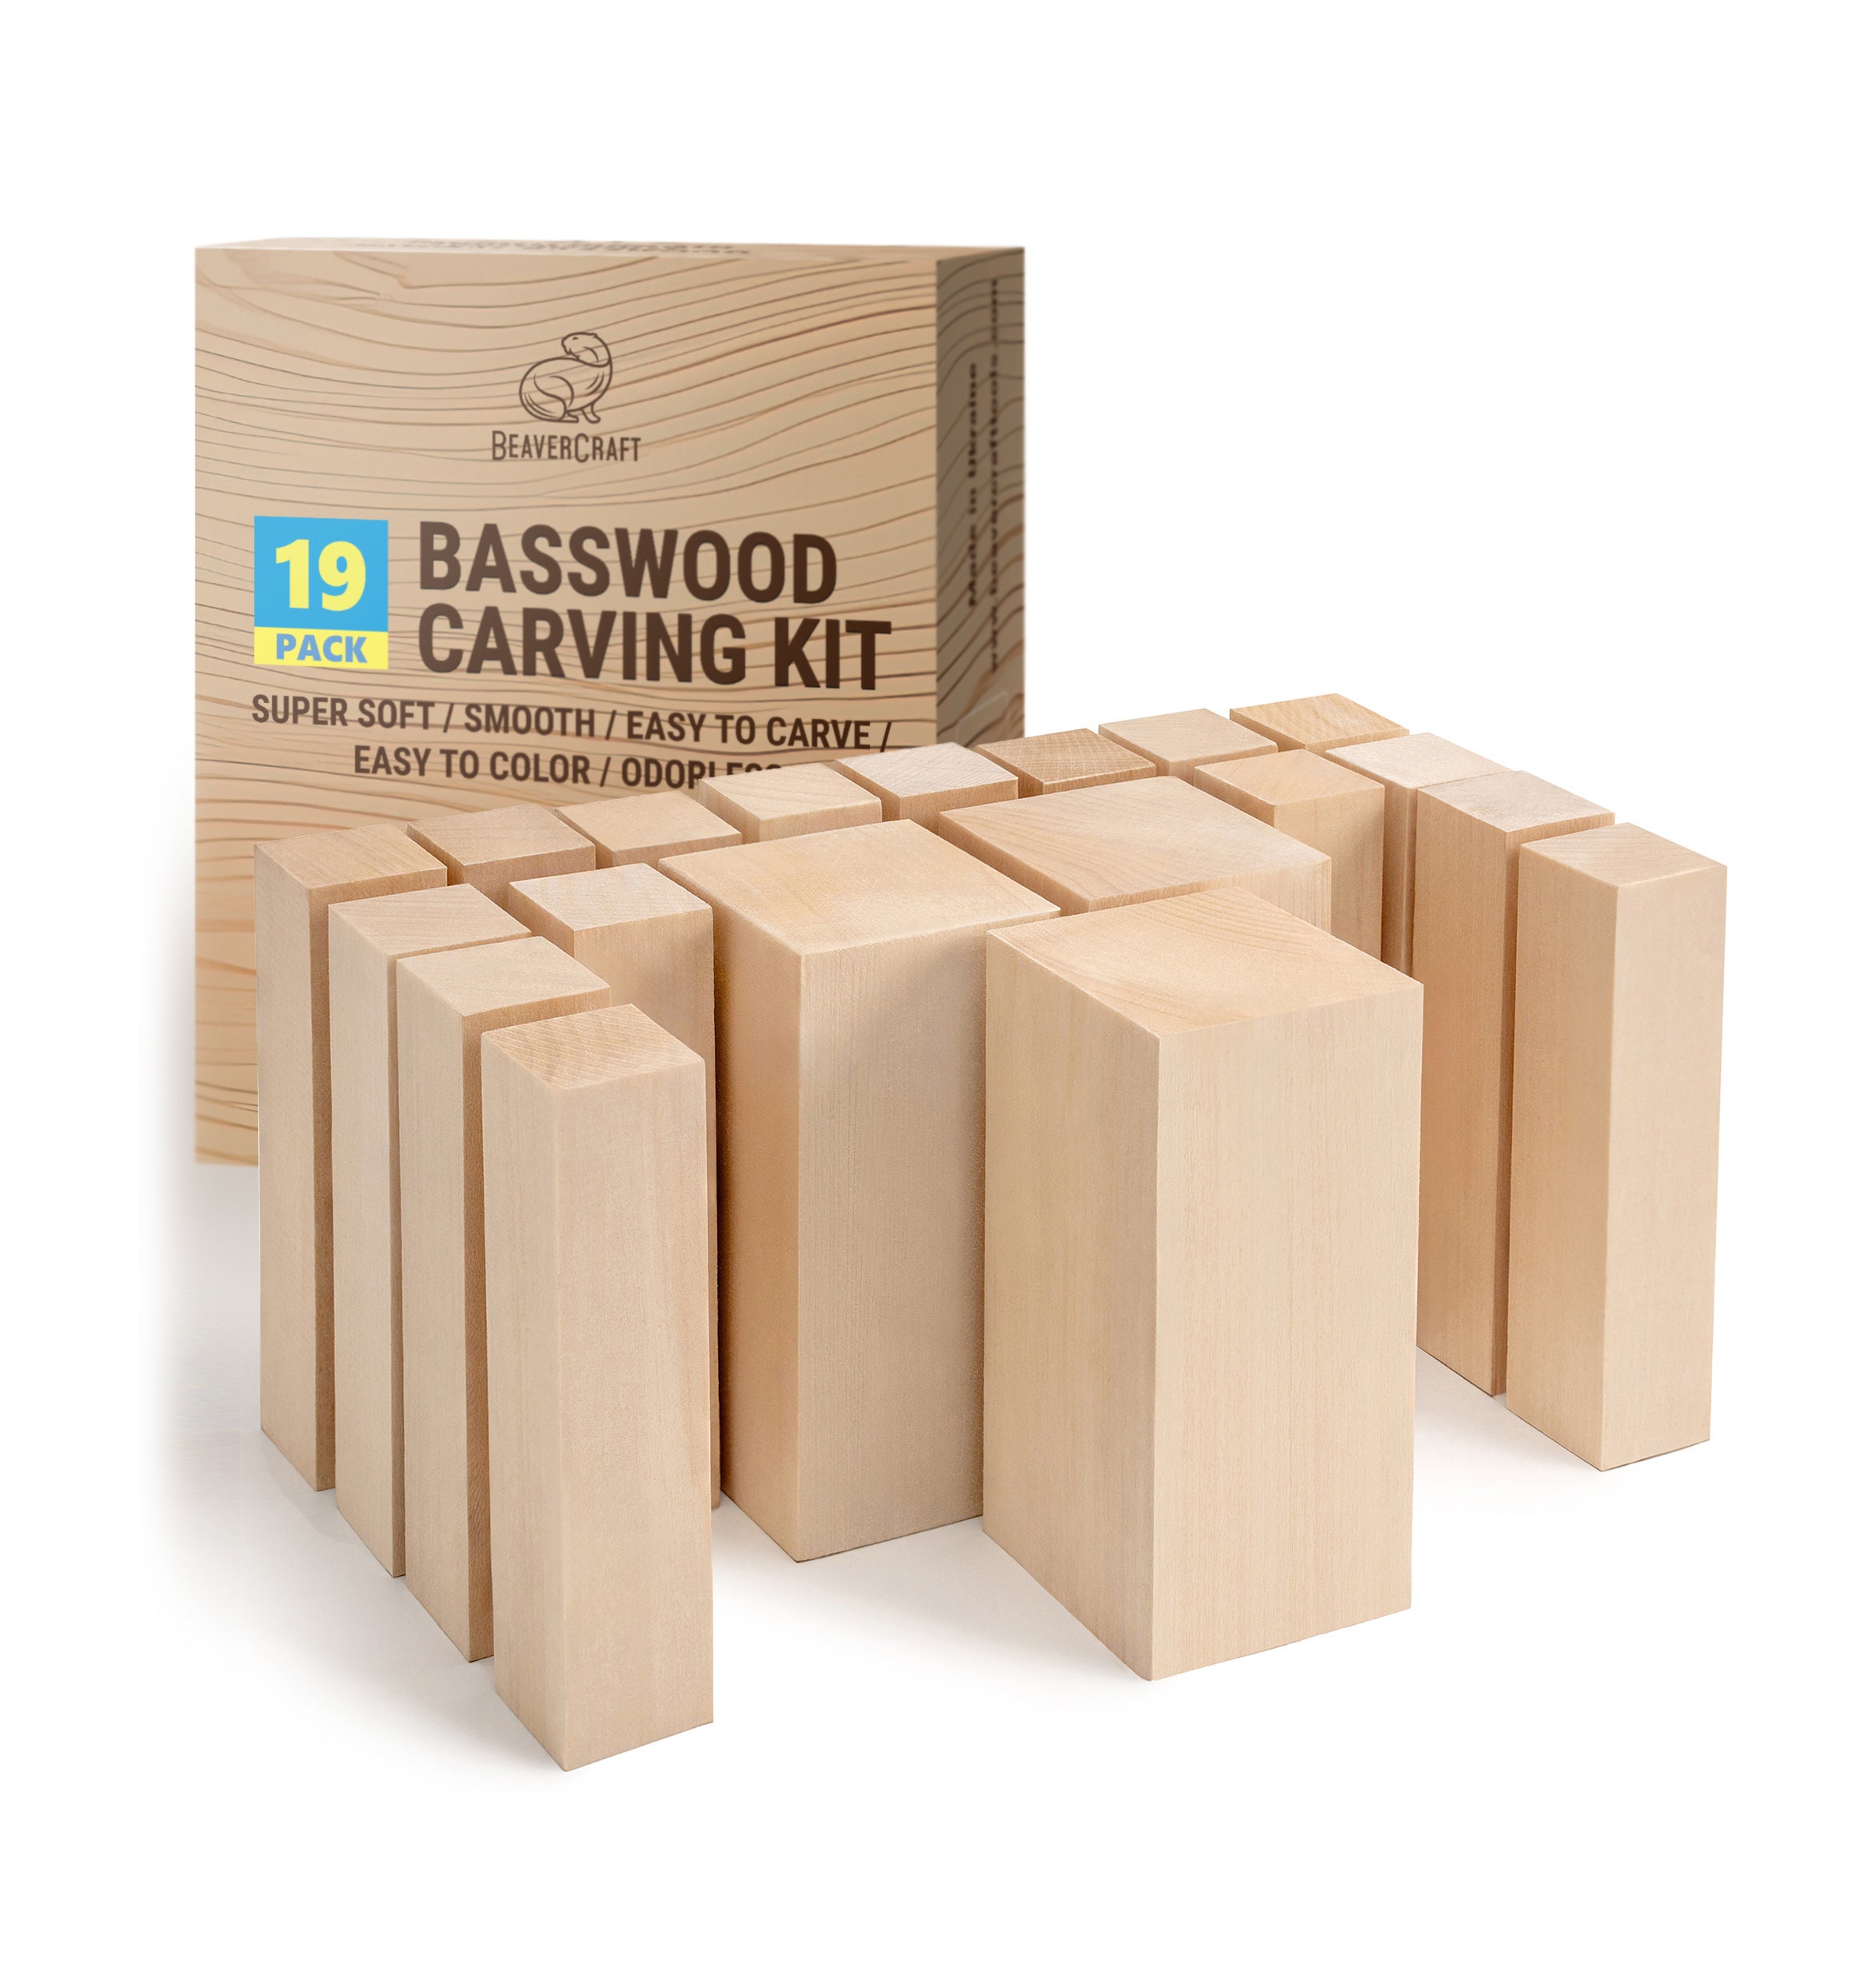 Set of Basswood Carving Blocks Beavercraft BW19 